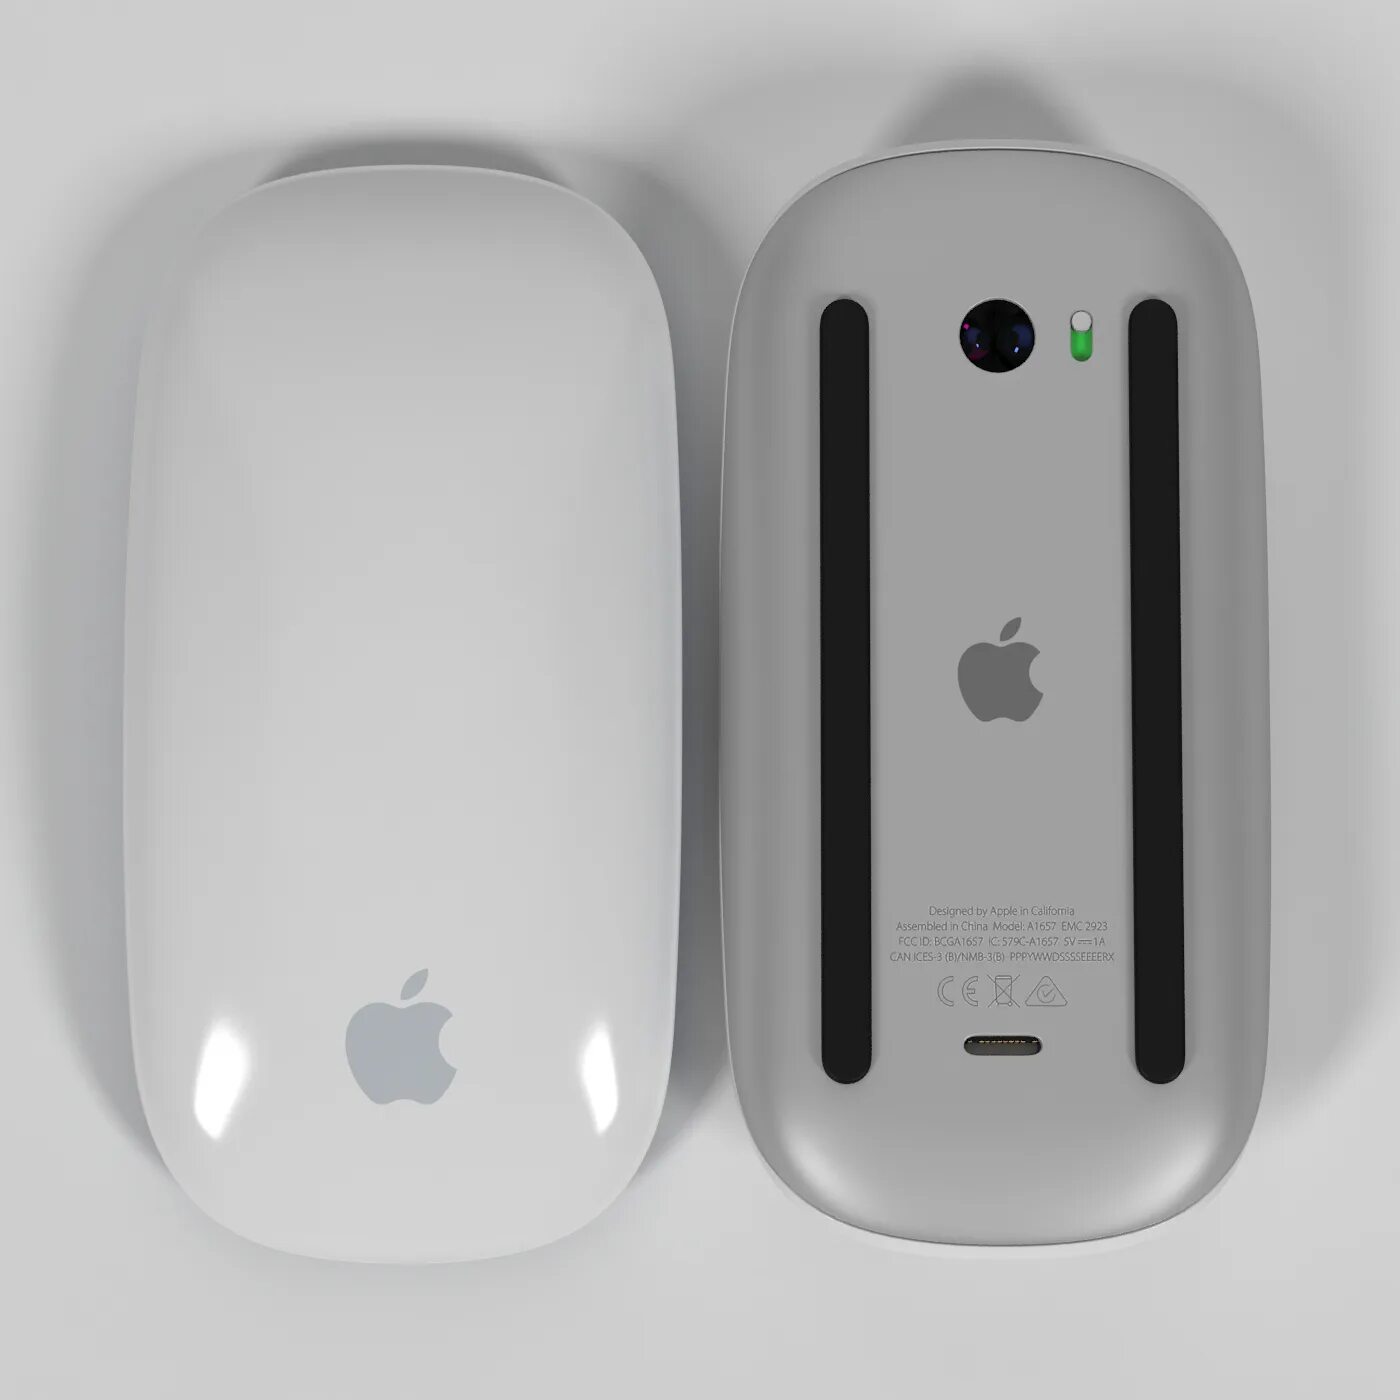 Мышь Apple Magic Mouse 1. Мышка Apple Magic Mouse 3. Apple Magic Mouse 2. Мышка Apple Magic Mouse 2.